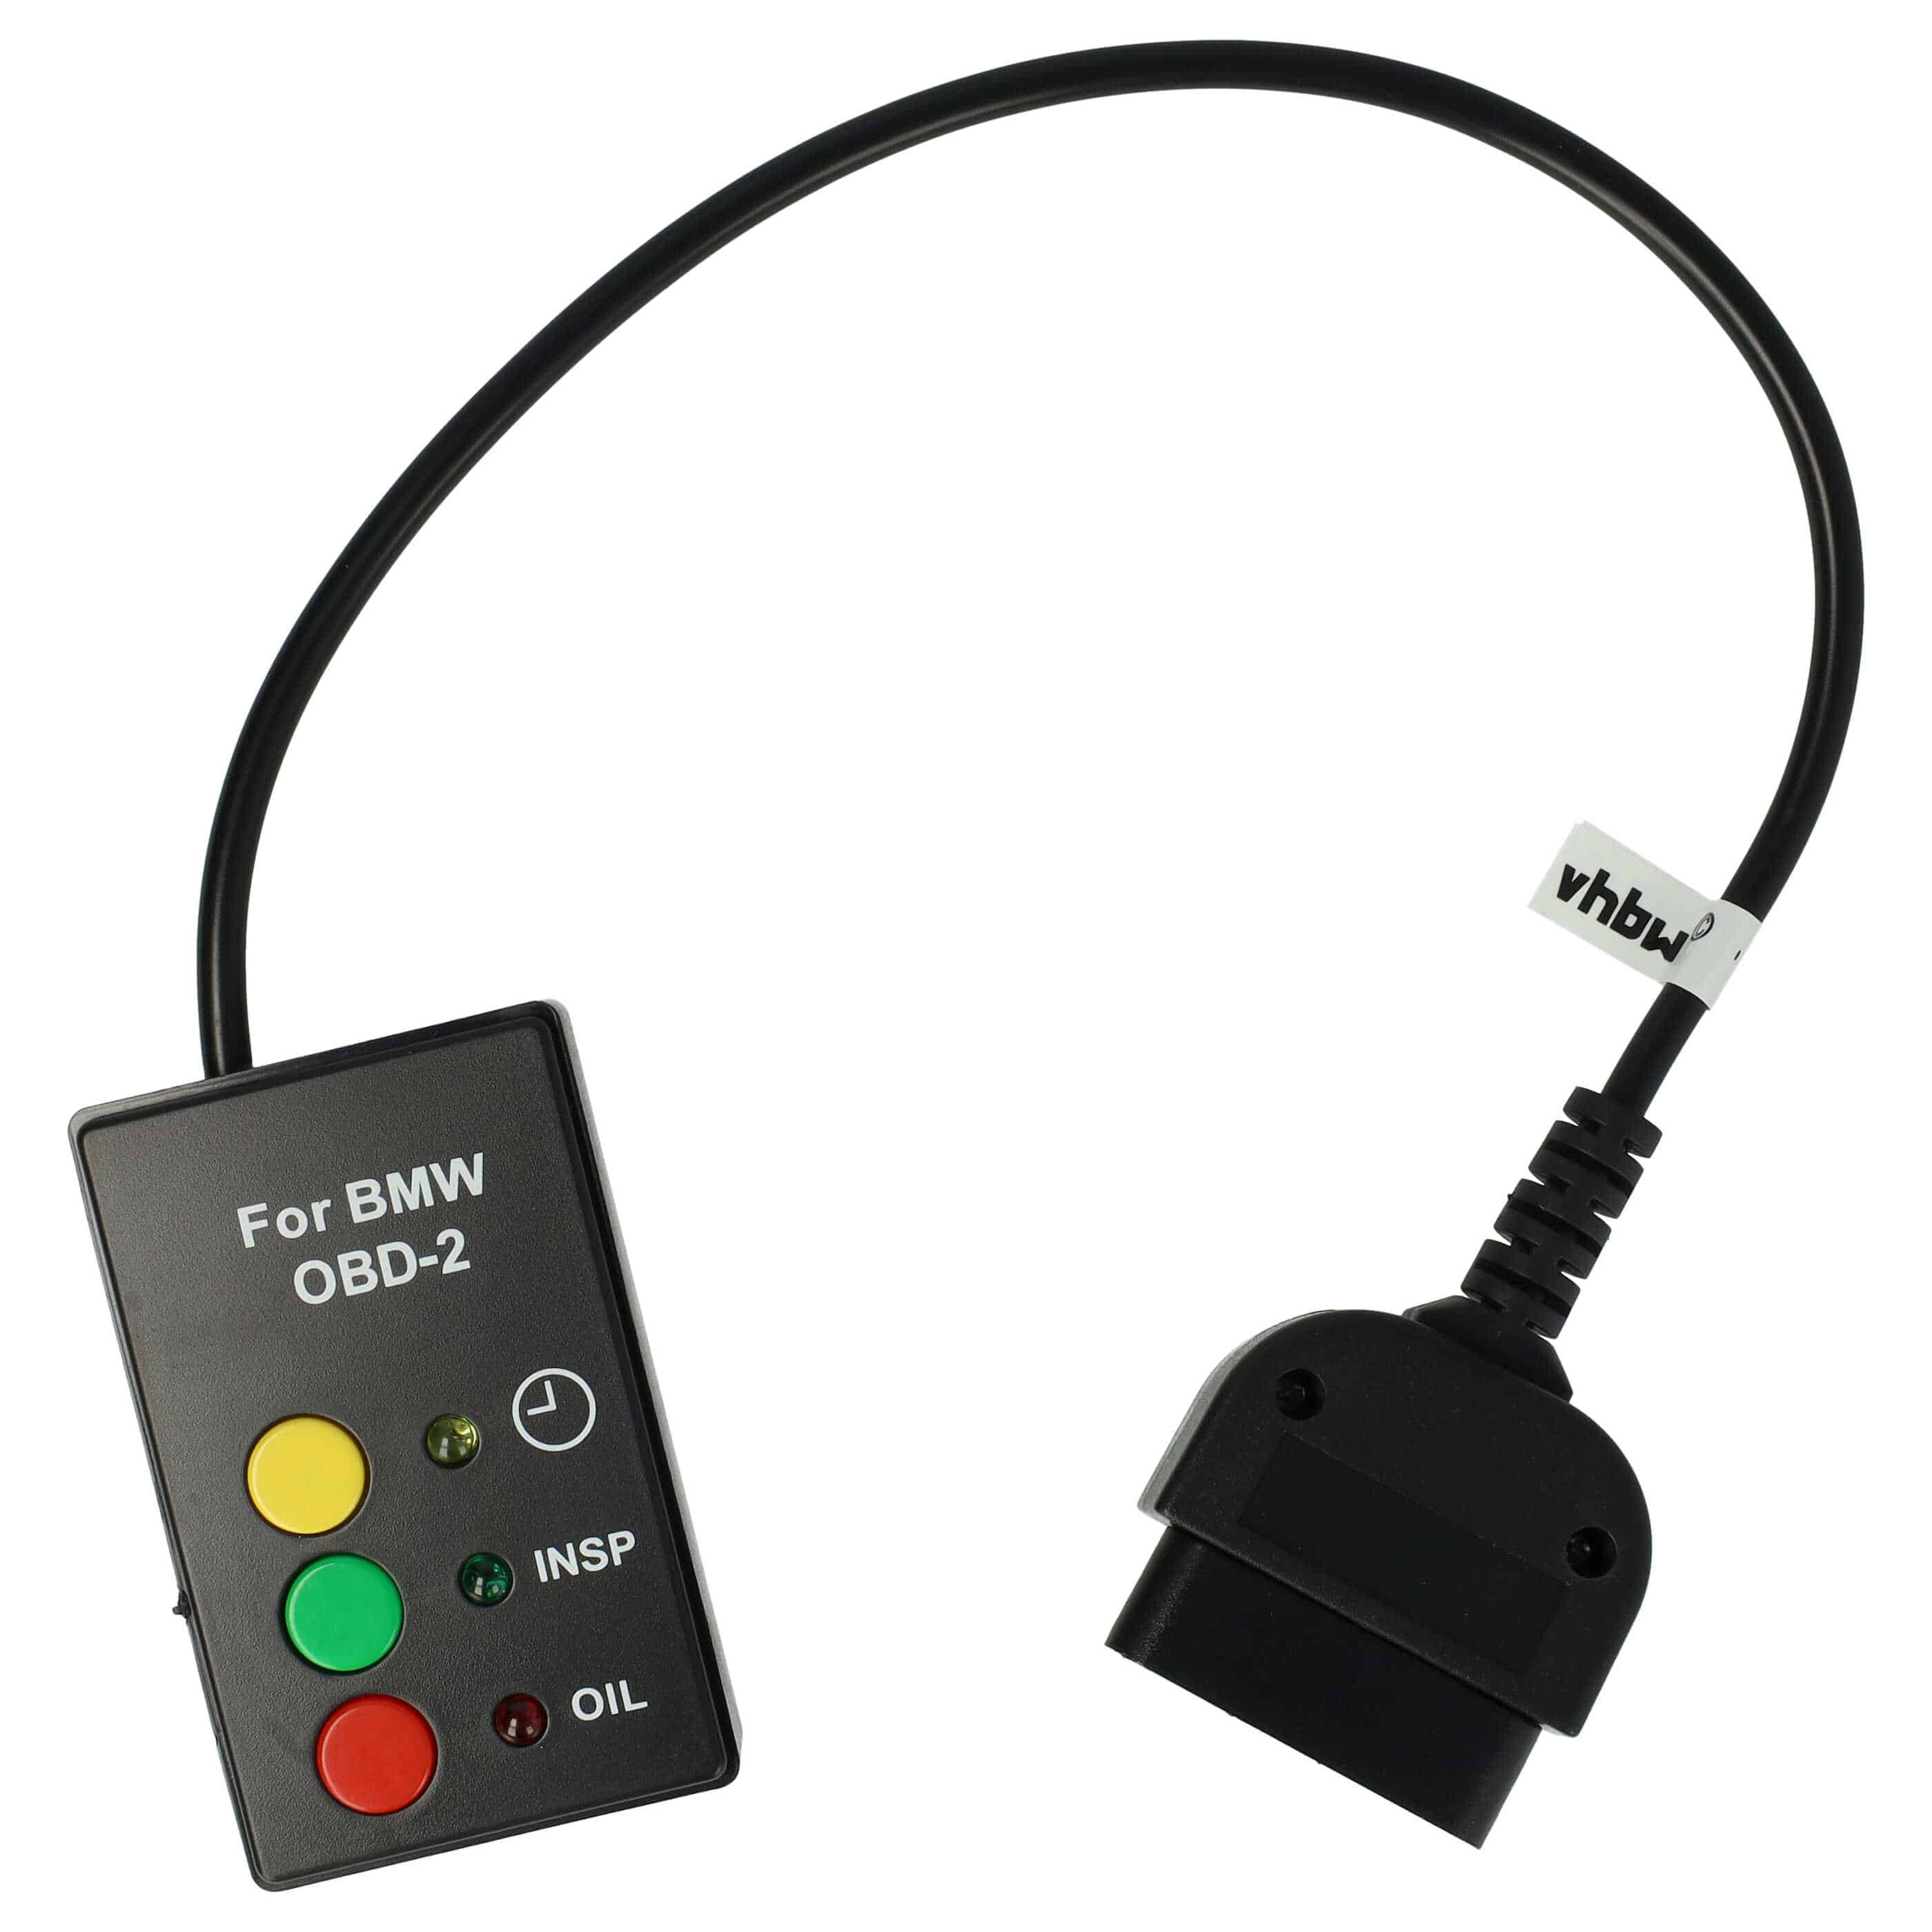 Restablecimiento indicador servicio para MINI / BMW / Rover año de fabr. 2001+ - Plug & Play - Conector OBD2